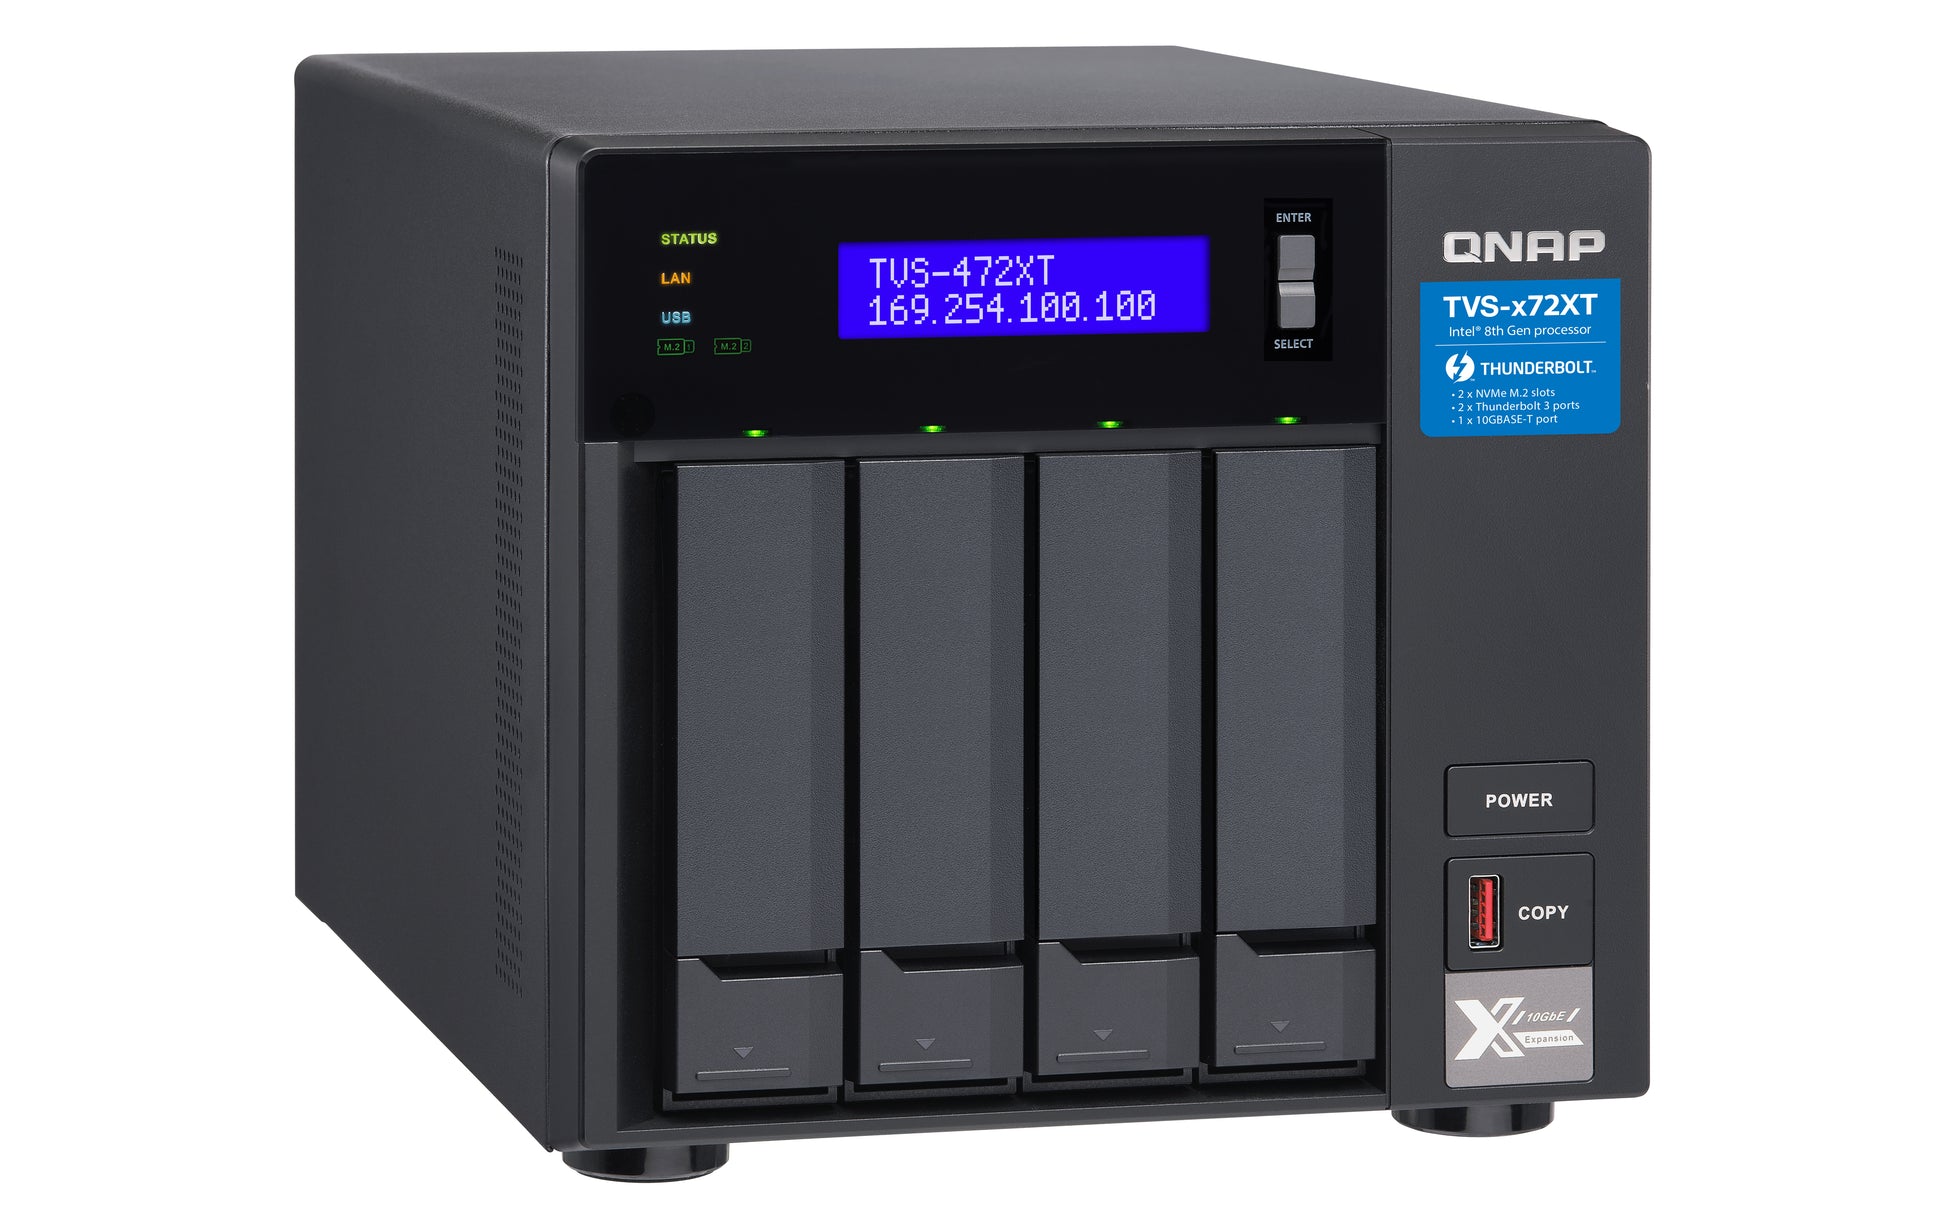 QNAP TVS-472XT NAS Tower Ethernet LAN Black-6